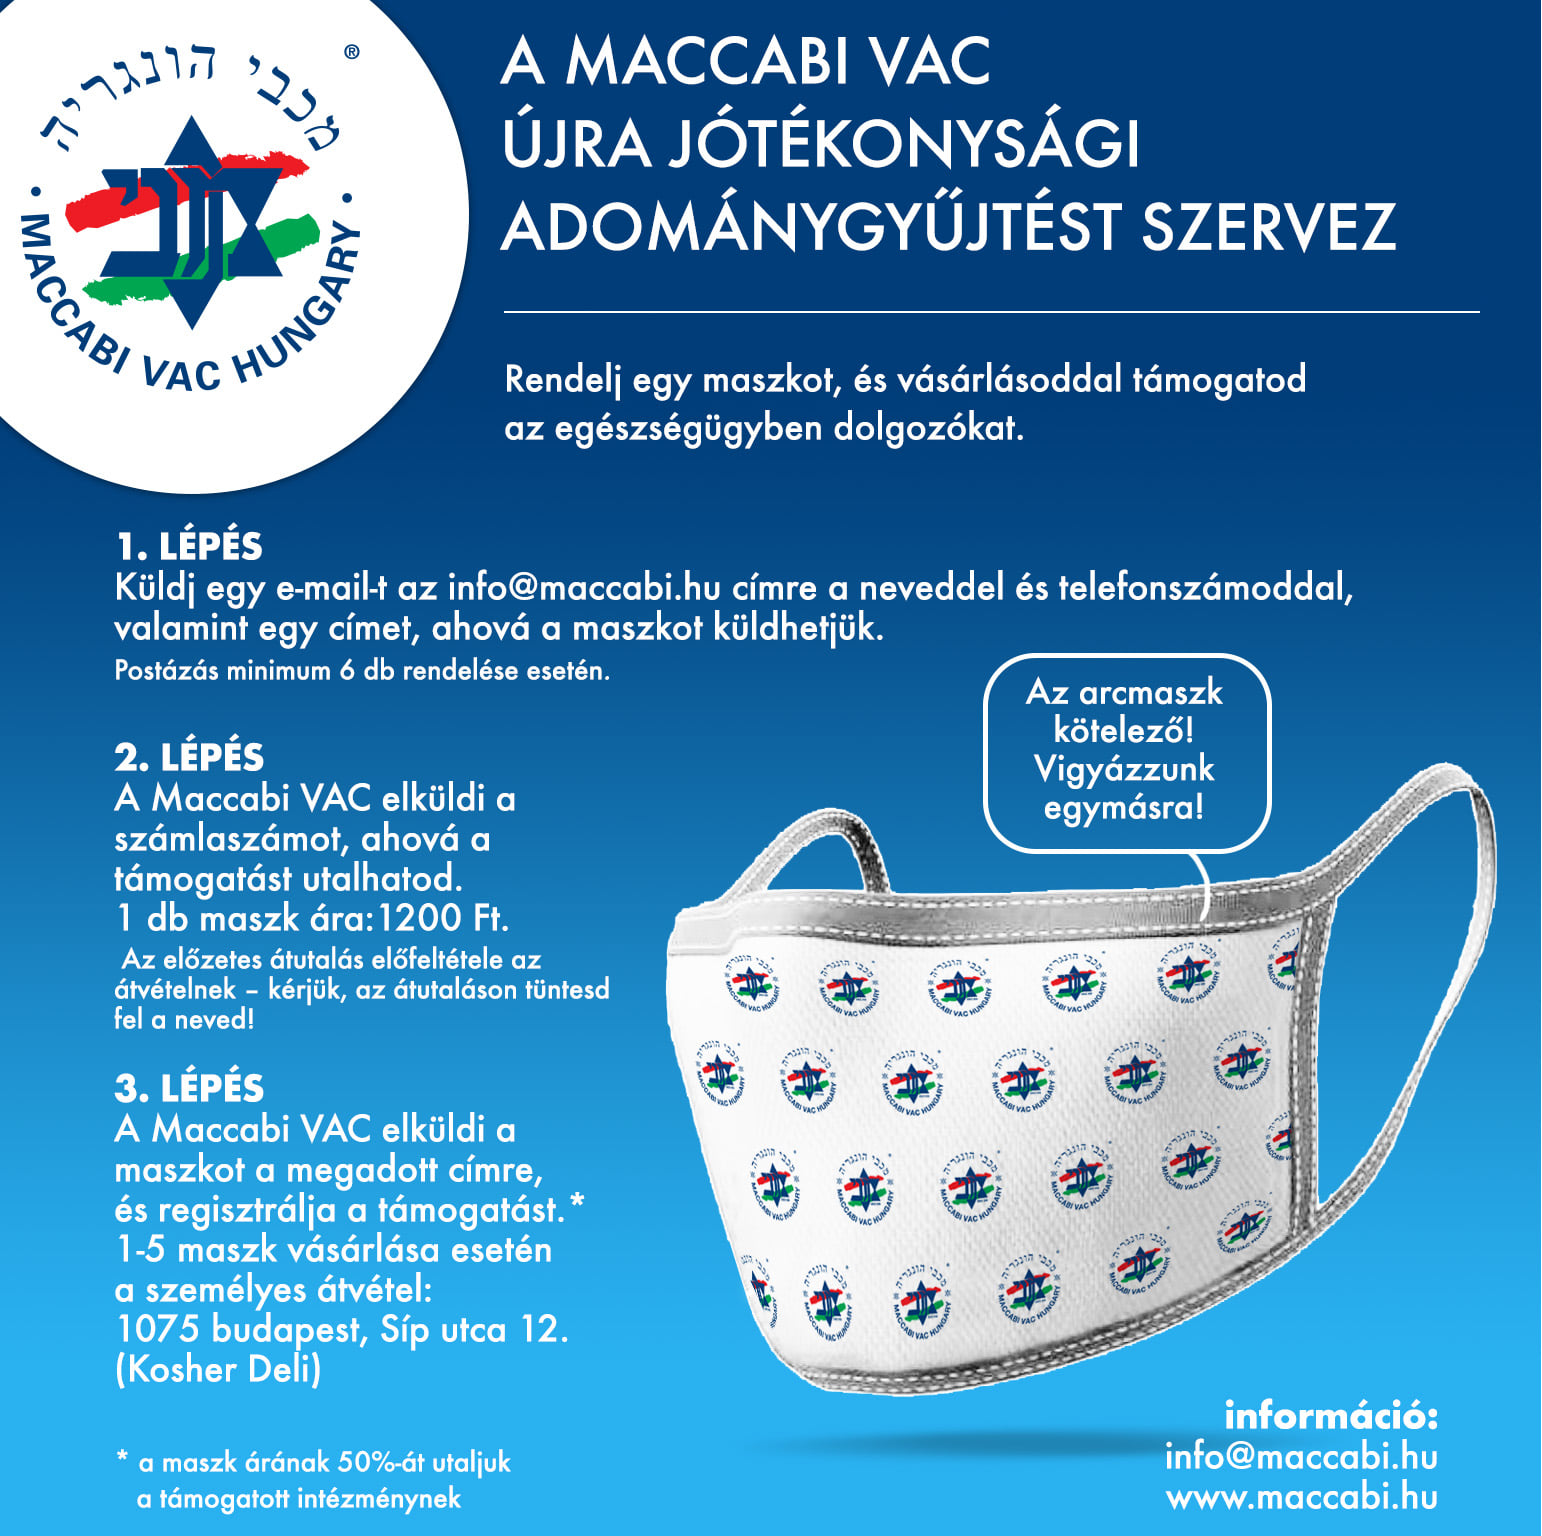 Maccabi VAC jótékonysági akció: vegyen egy maszkot és támogassa az egészségügyi dolgozókat